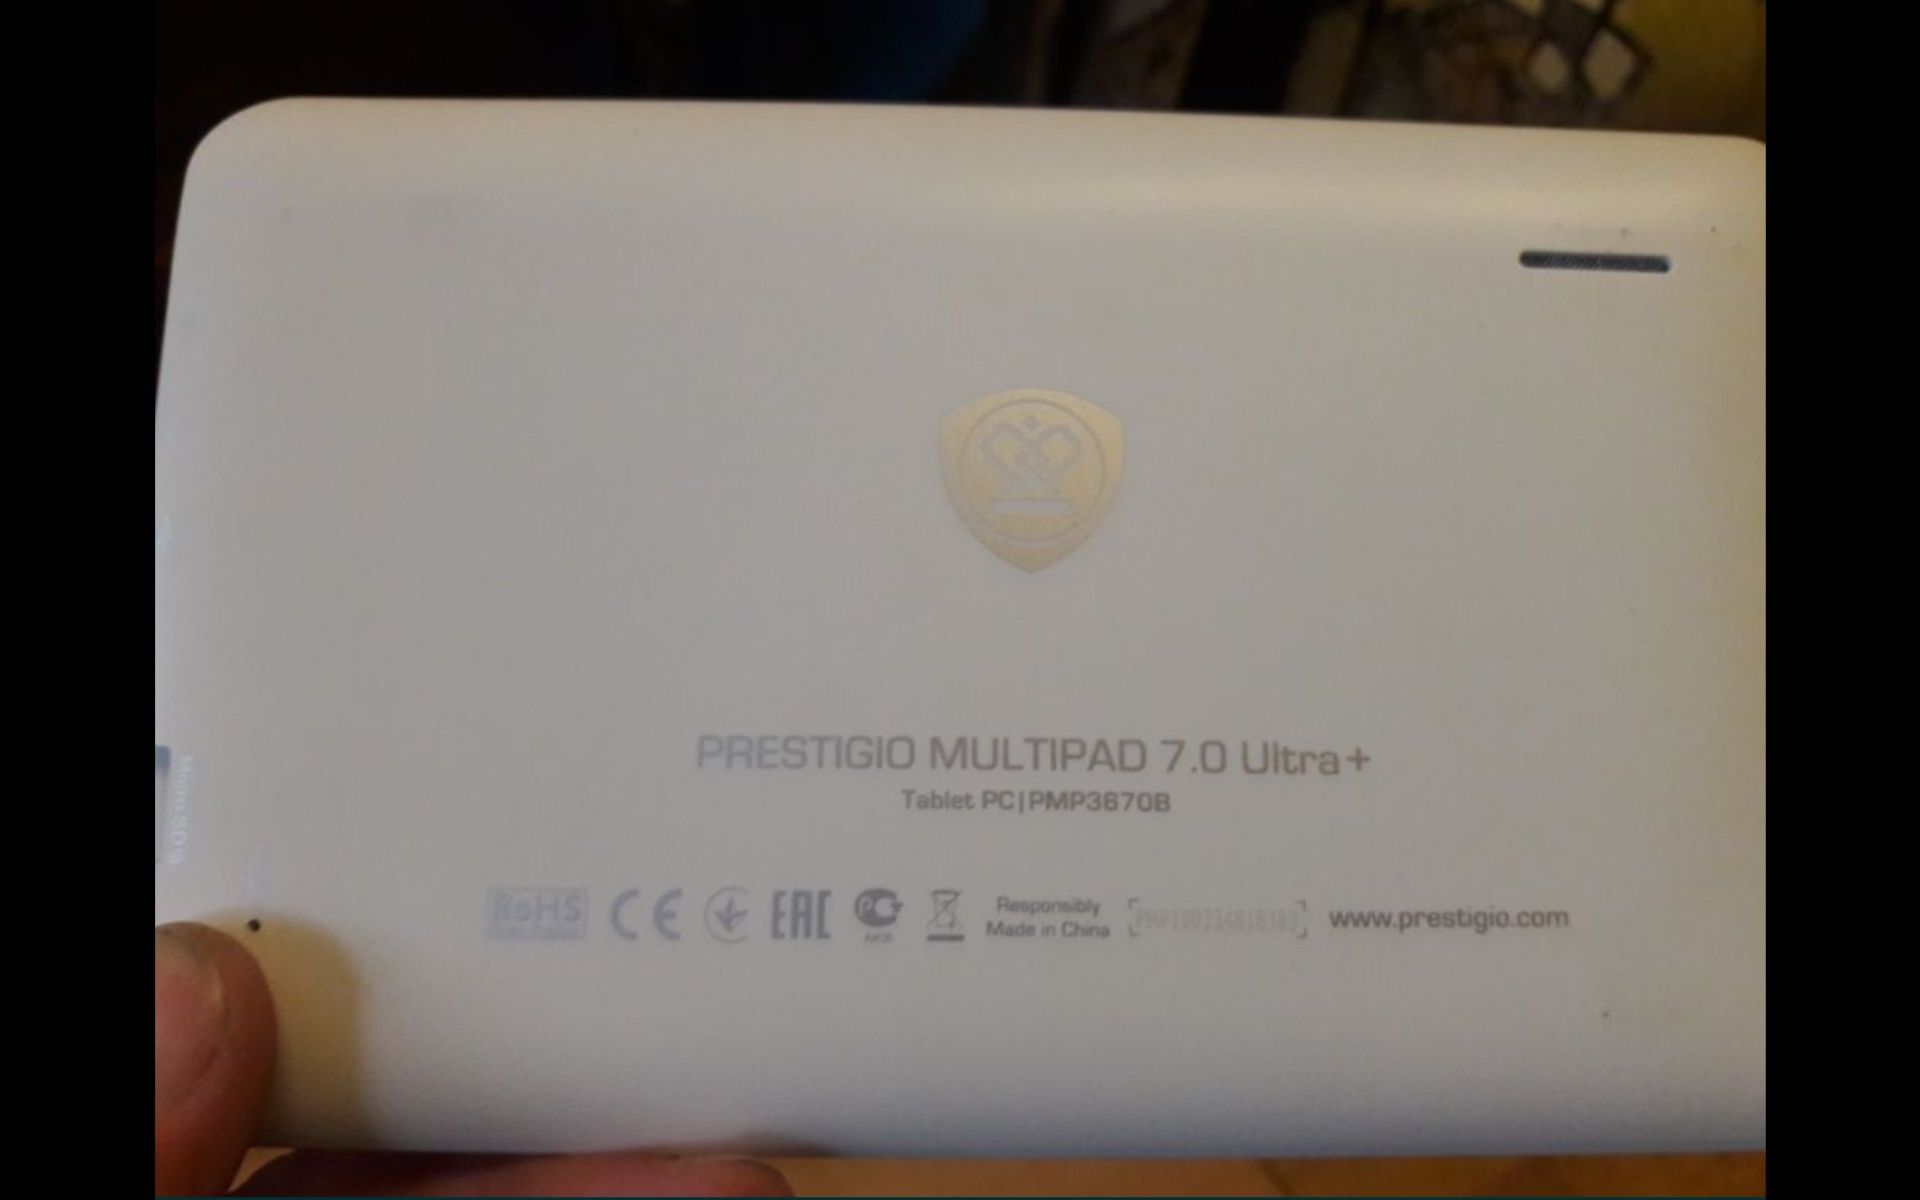 Продам планшет Prestigio Multipad 7.0 Ultra+. Хорошее состояние. С чех